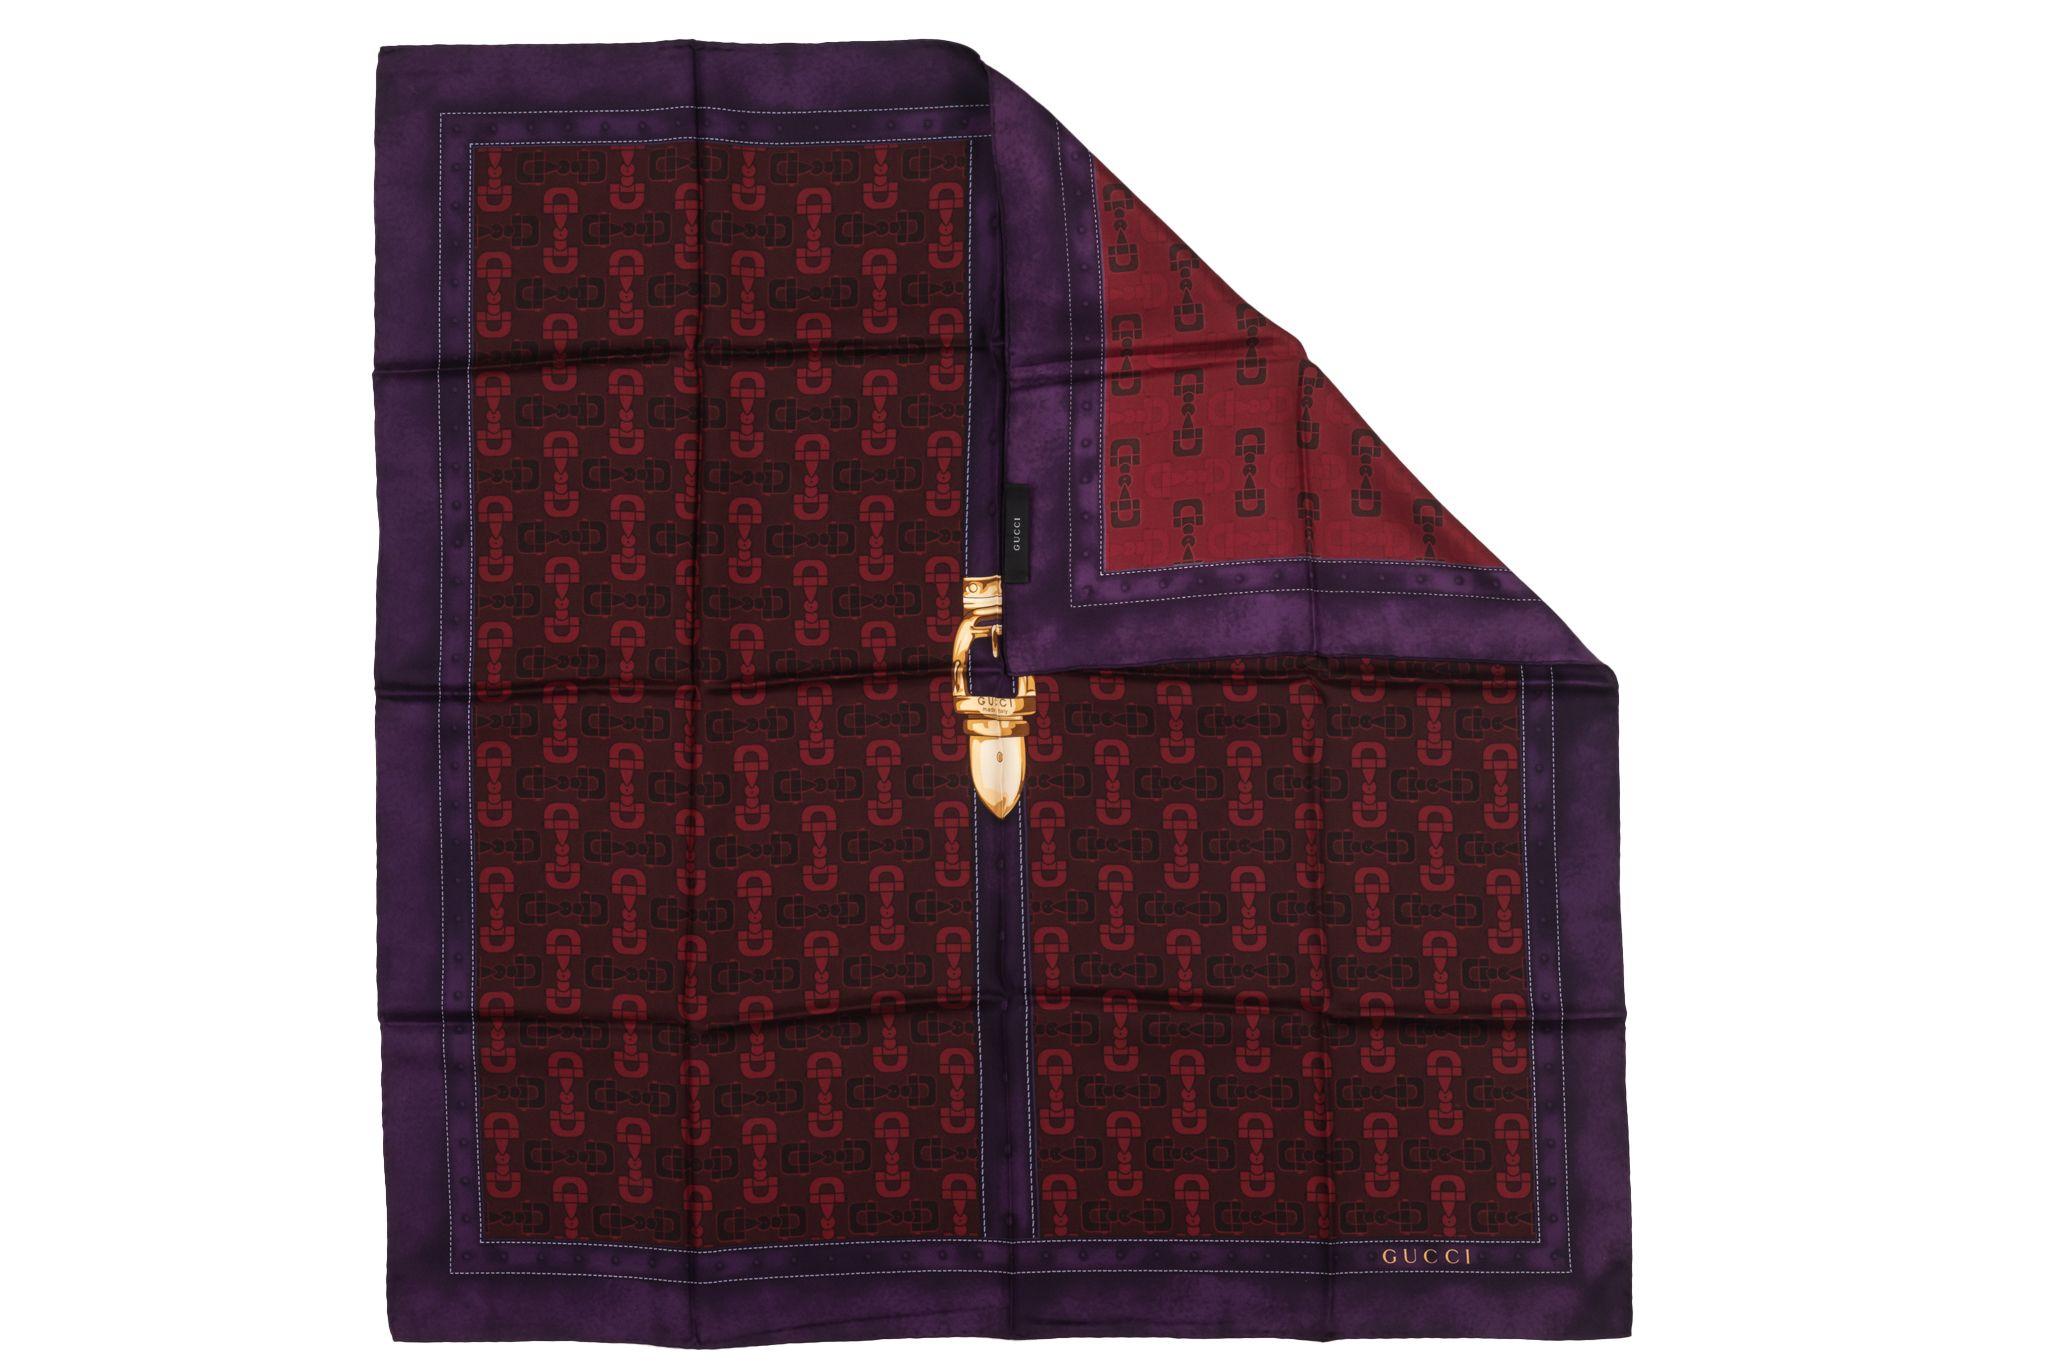 Echarpe en soie à mors de cheval Gucci, rouge et cadre violet. Le motif représente plusieurs mors de cheval et, au milieu, une serrure. L'article est en excellent état.